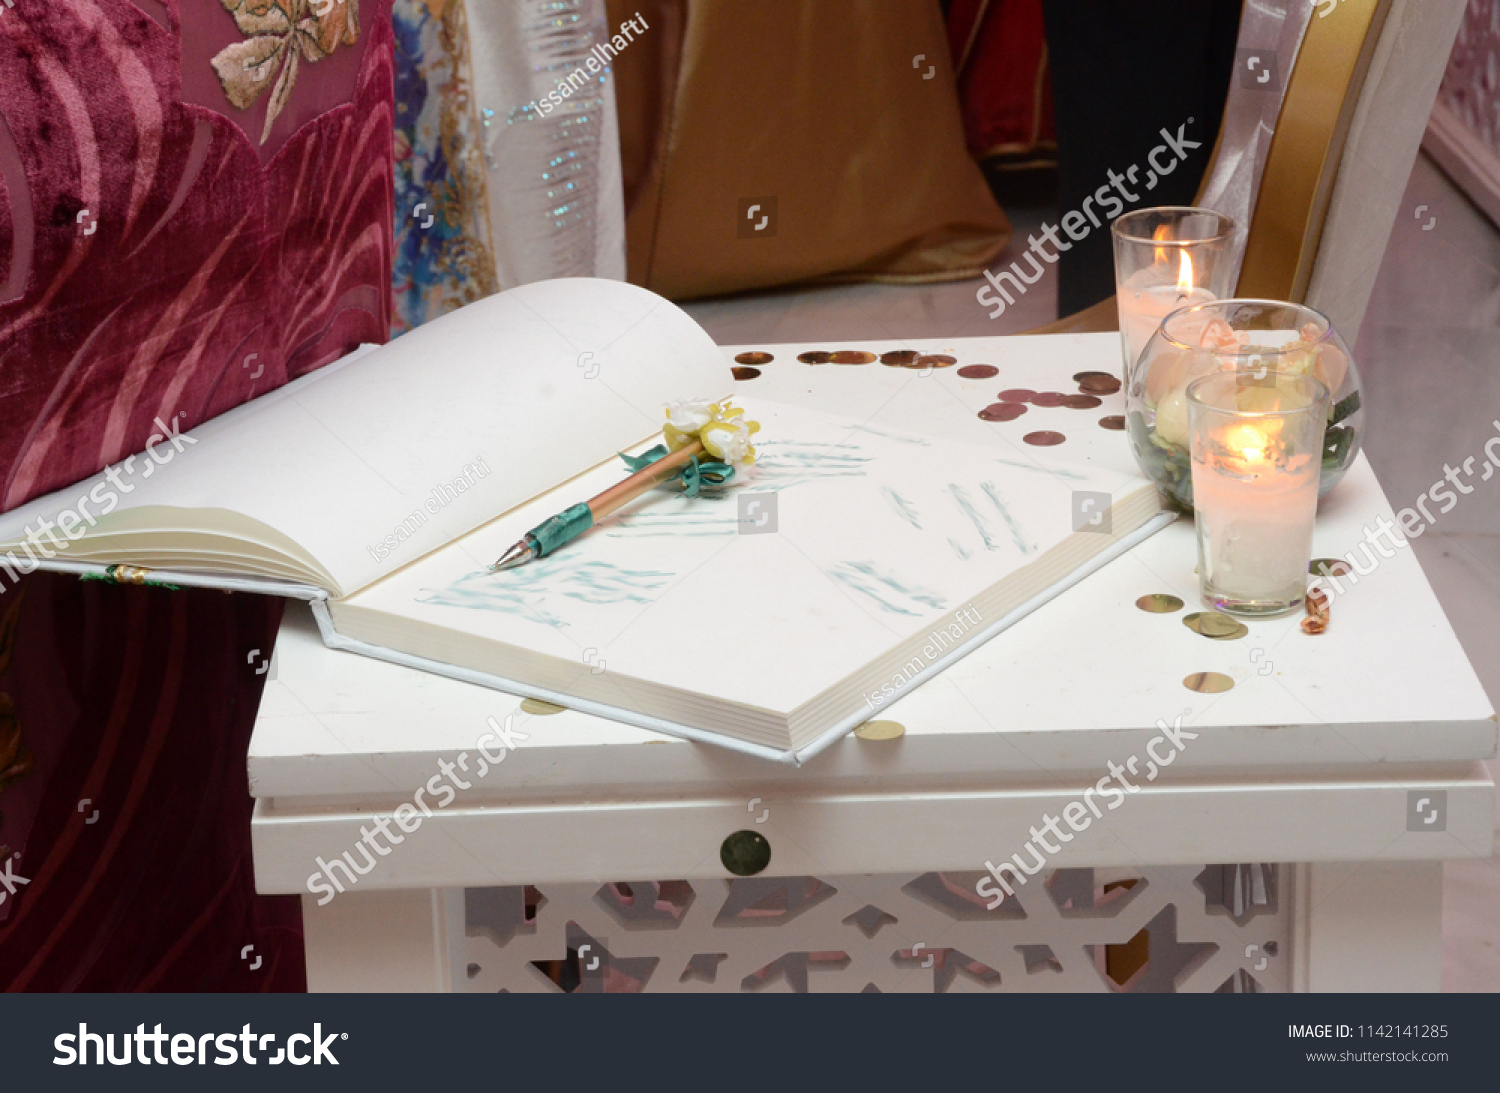 wedding signature book